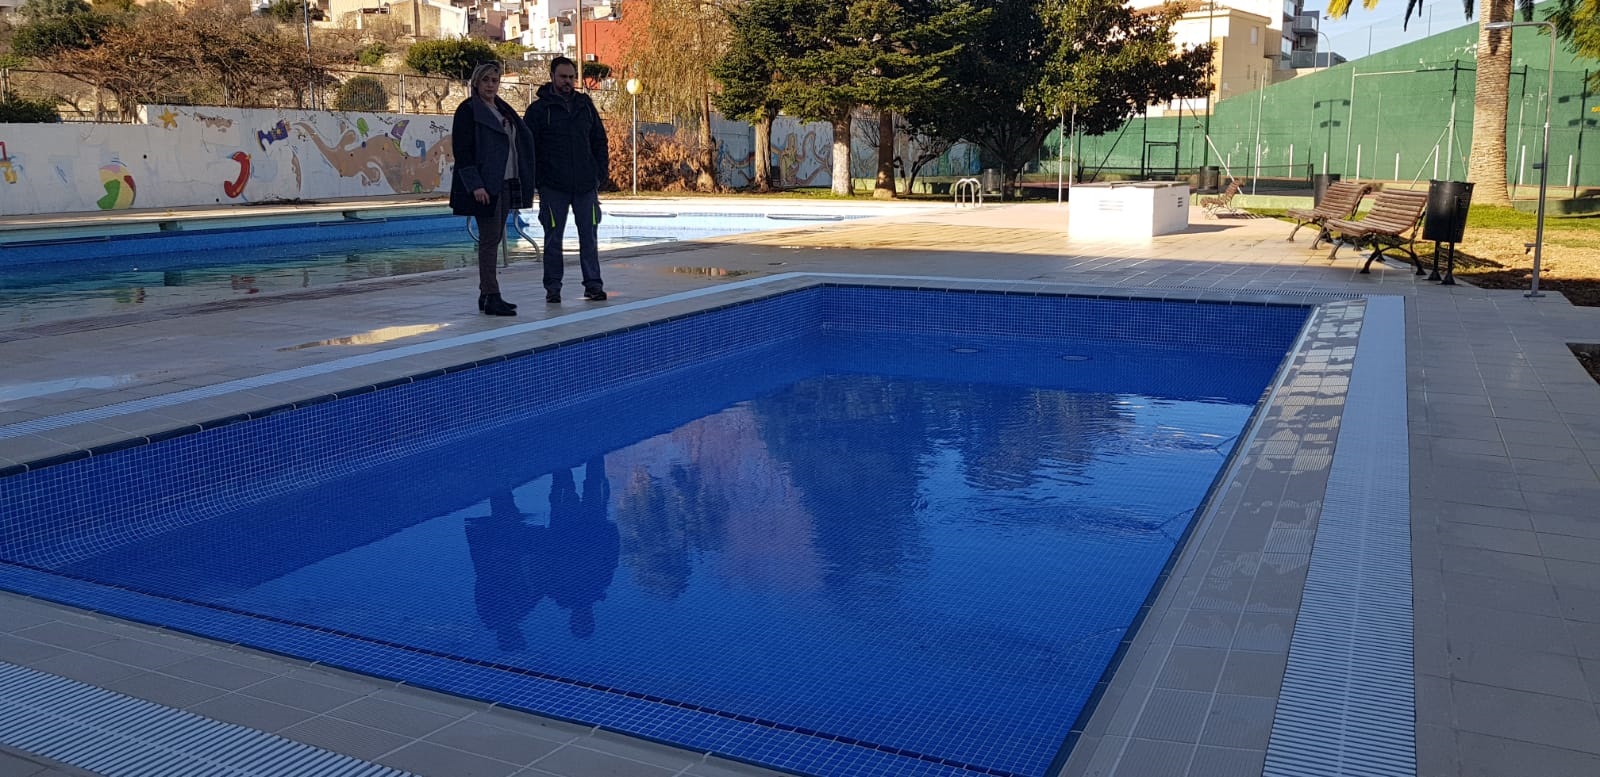 Càlig finalitza la remodelació de la piscina municipal infantil